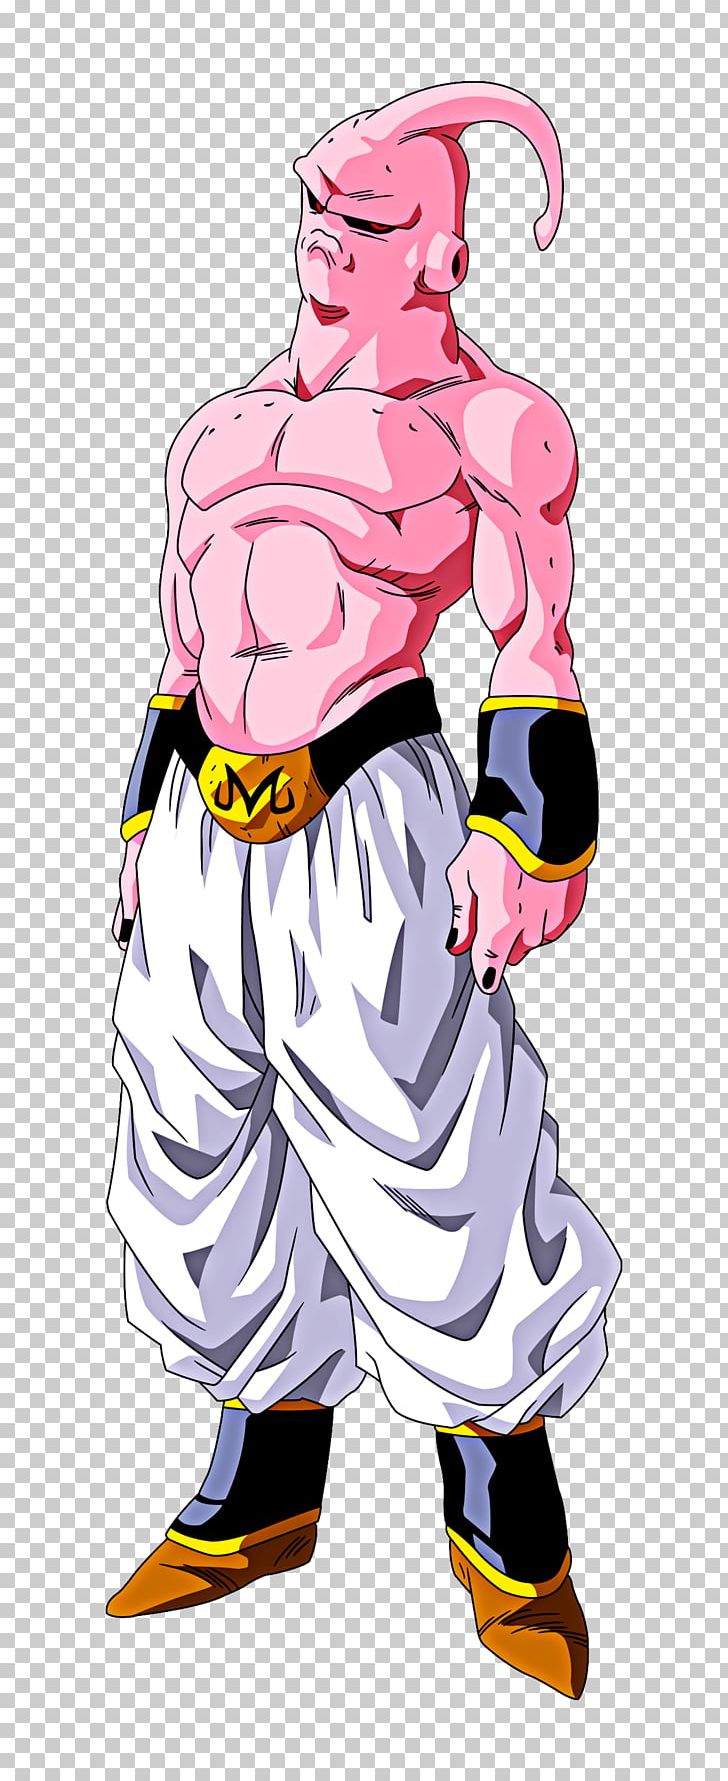 Majin Buu Goku Trunks Gohan Frieza PNG, Clipart, Arm, Art, Cartoon, Cell, Clothing Free PNG Download